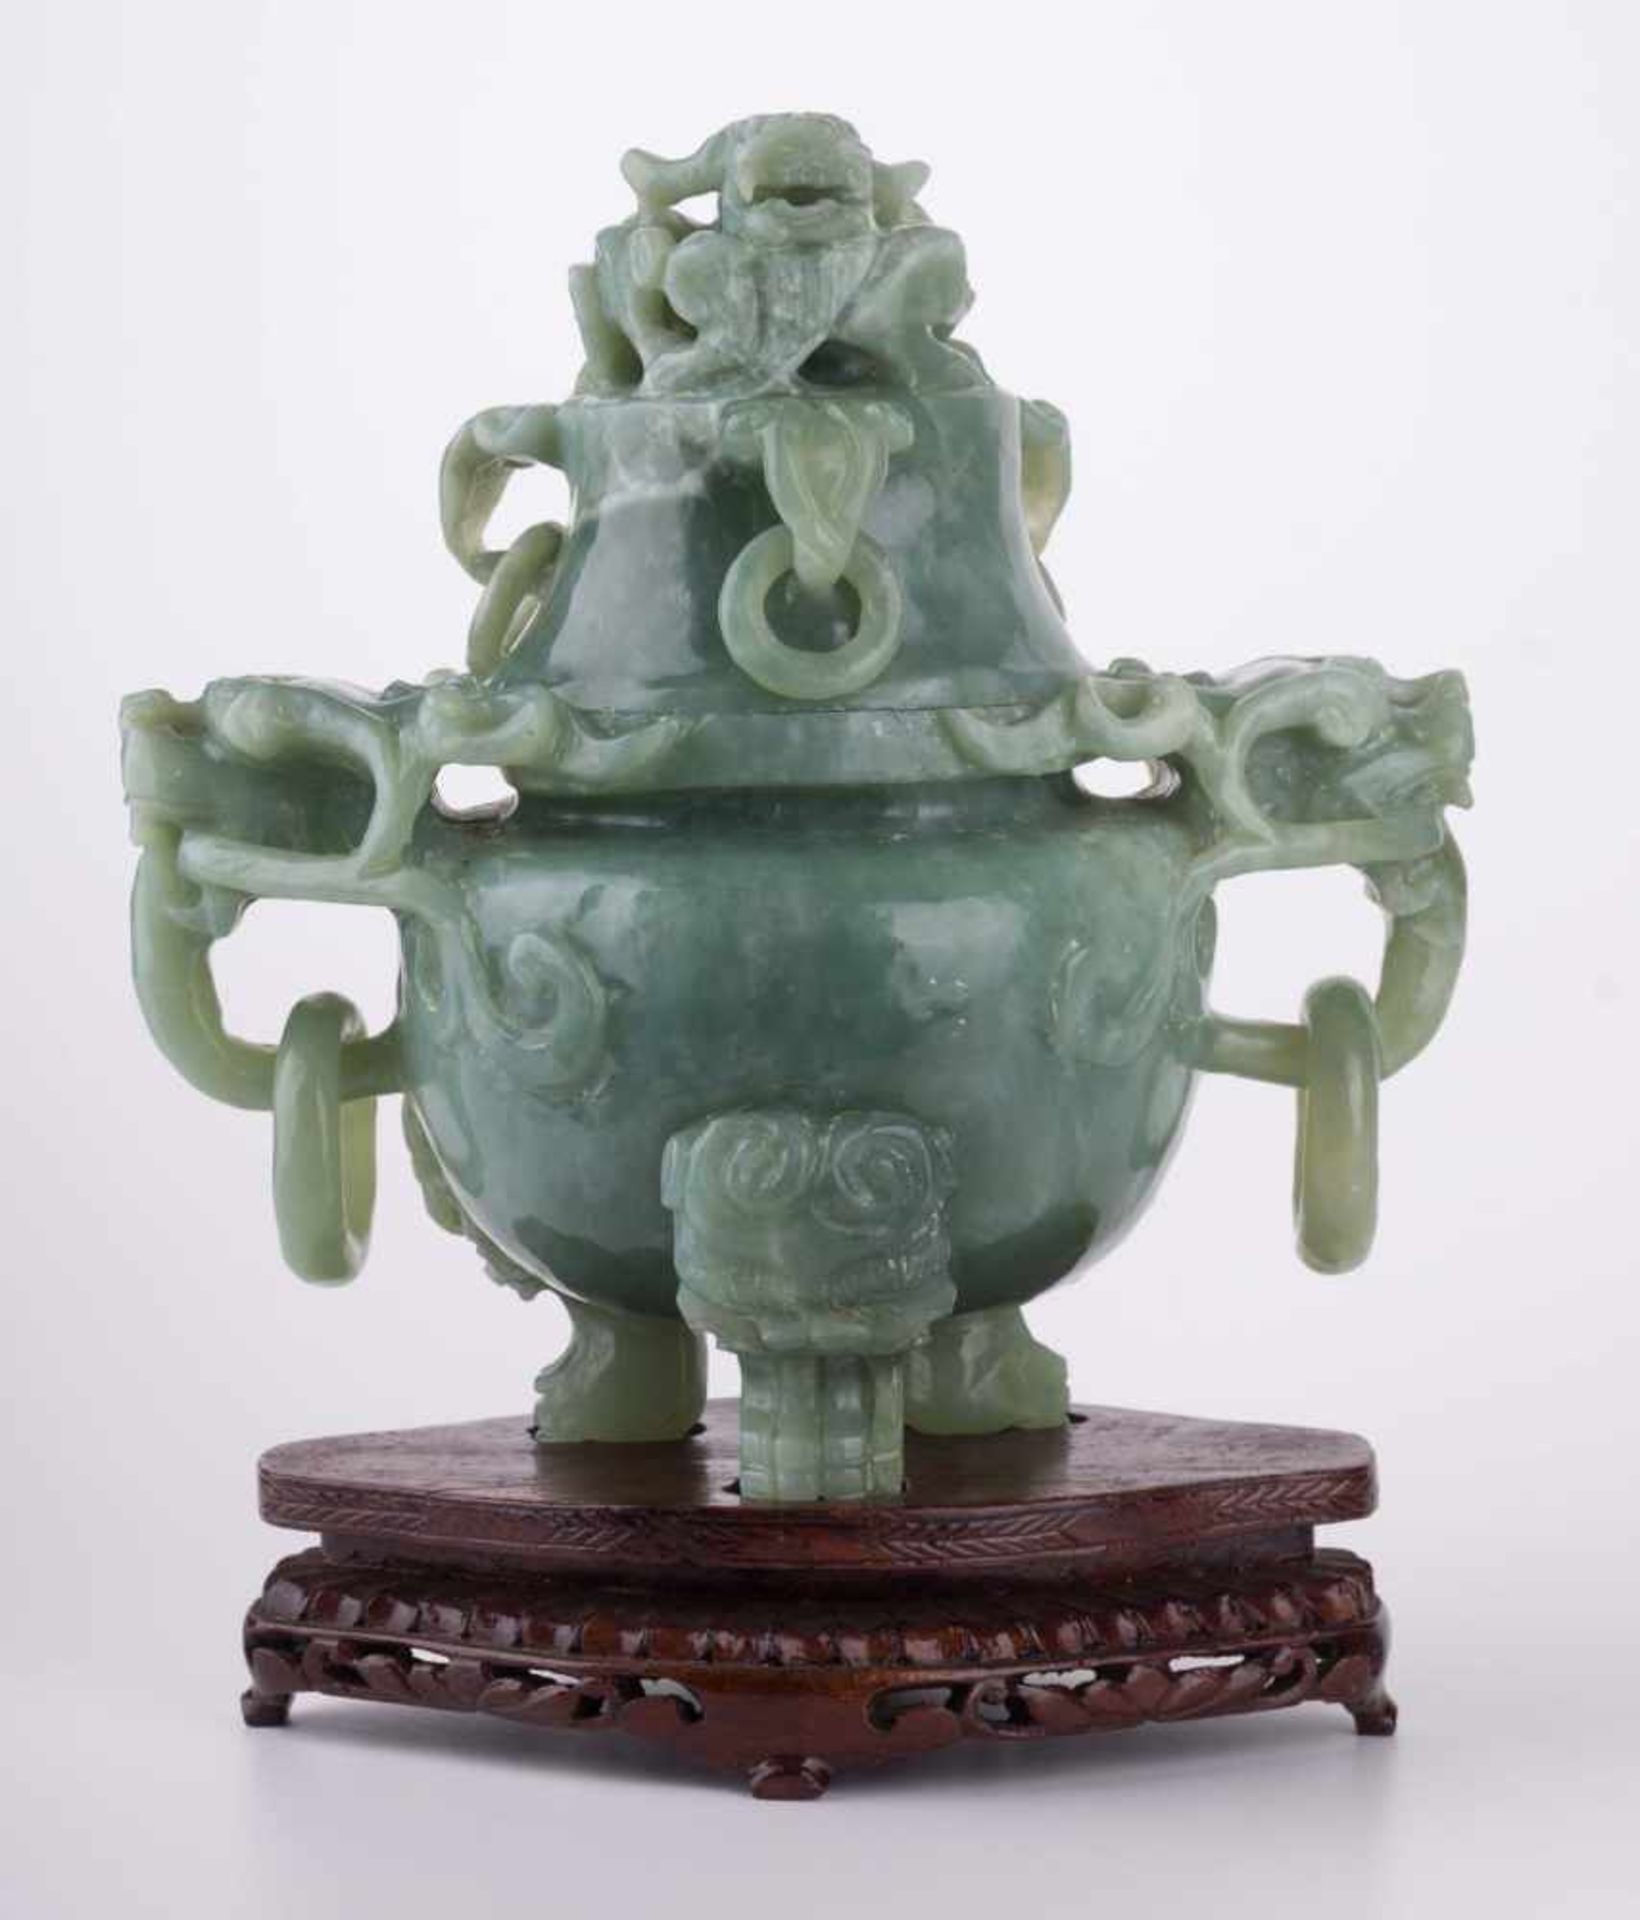 Jade Deckelgefäß China 19./20. Jhd. / Lidded jade vessel, China 19th/20th century mit seitlichen